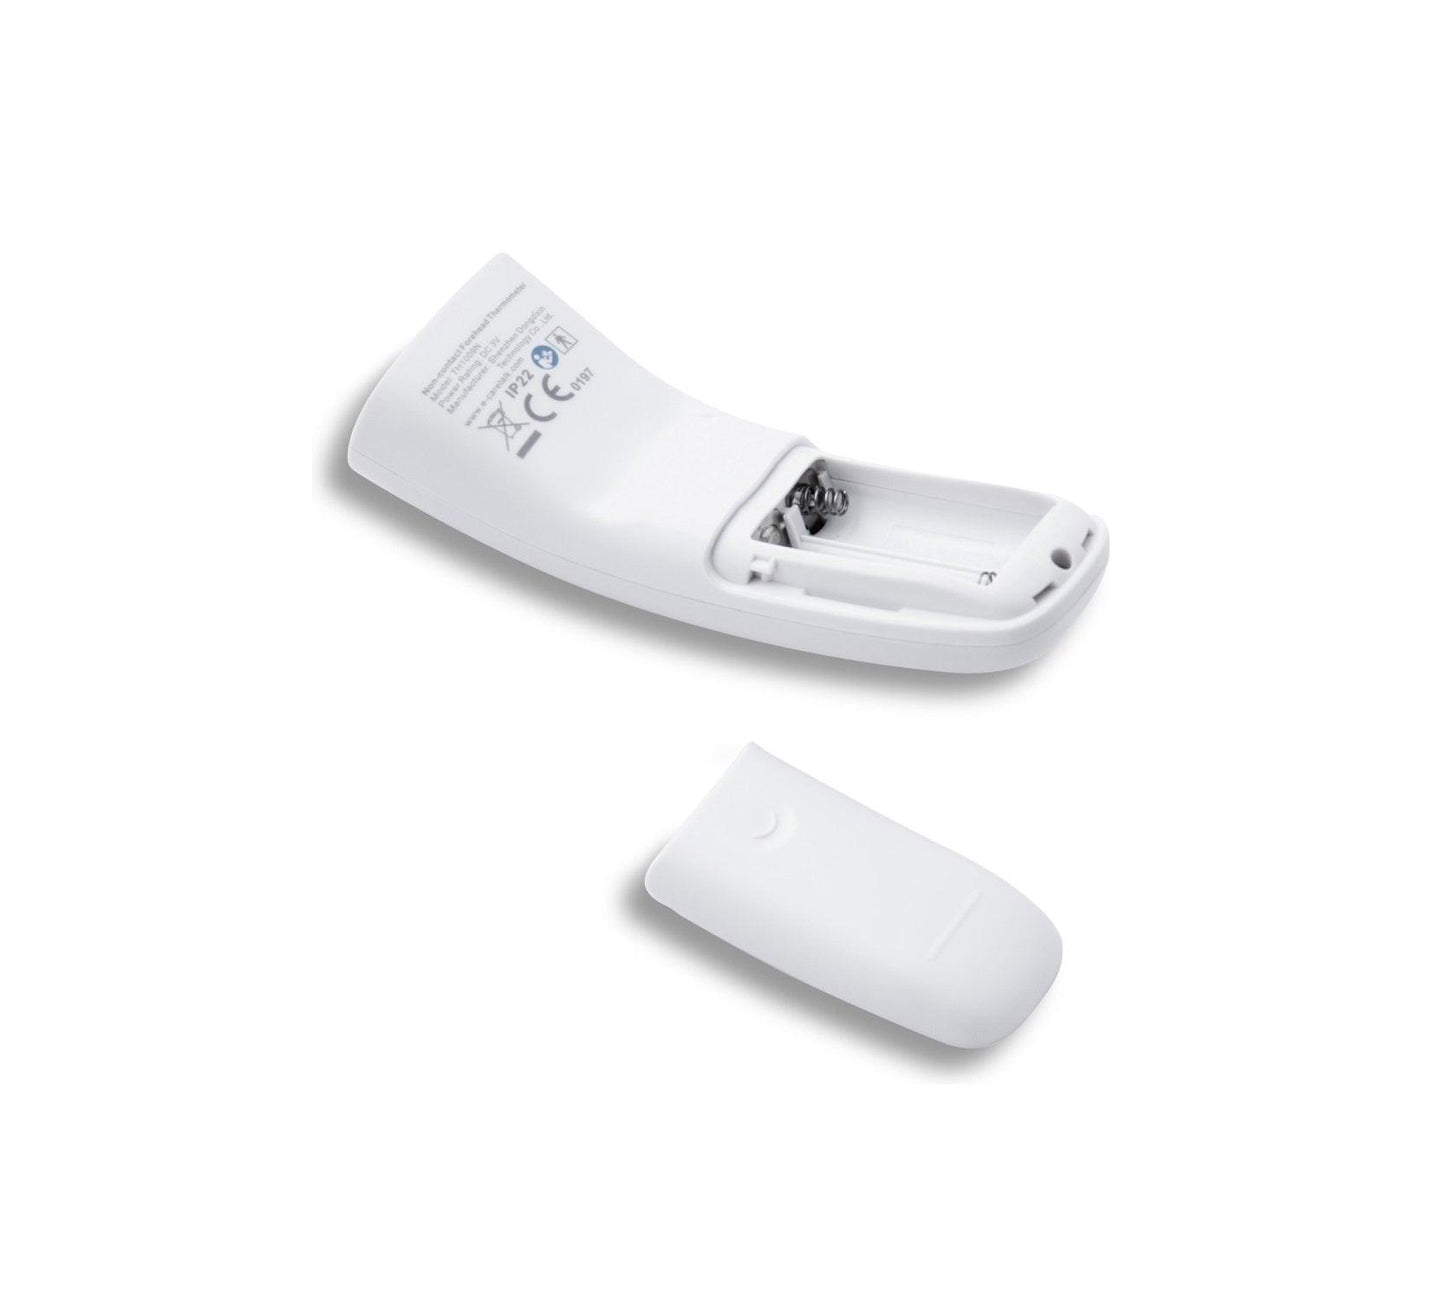 Inventum TMC609 3-in-1 Voorhoofddthermometer | Dé Online Medische Webshop